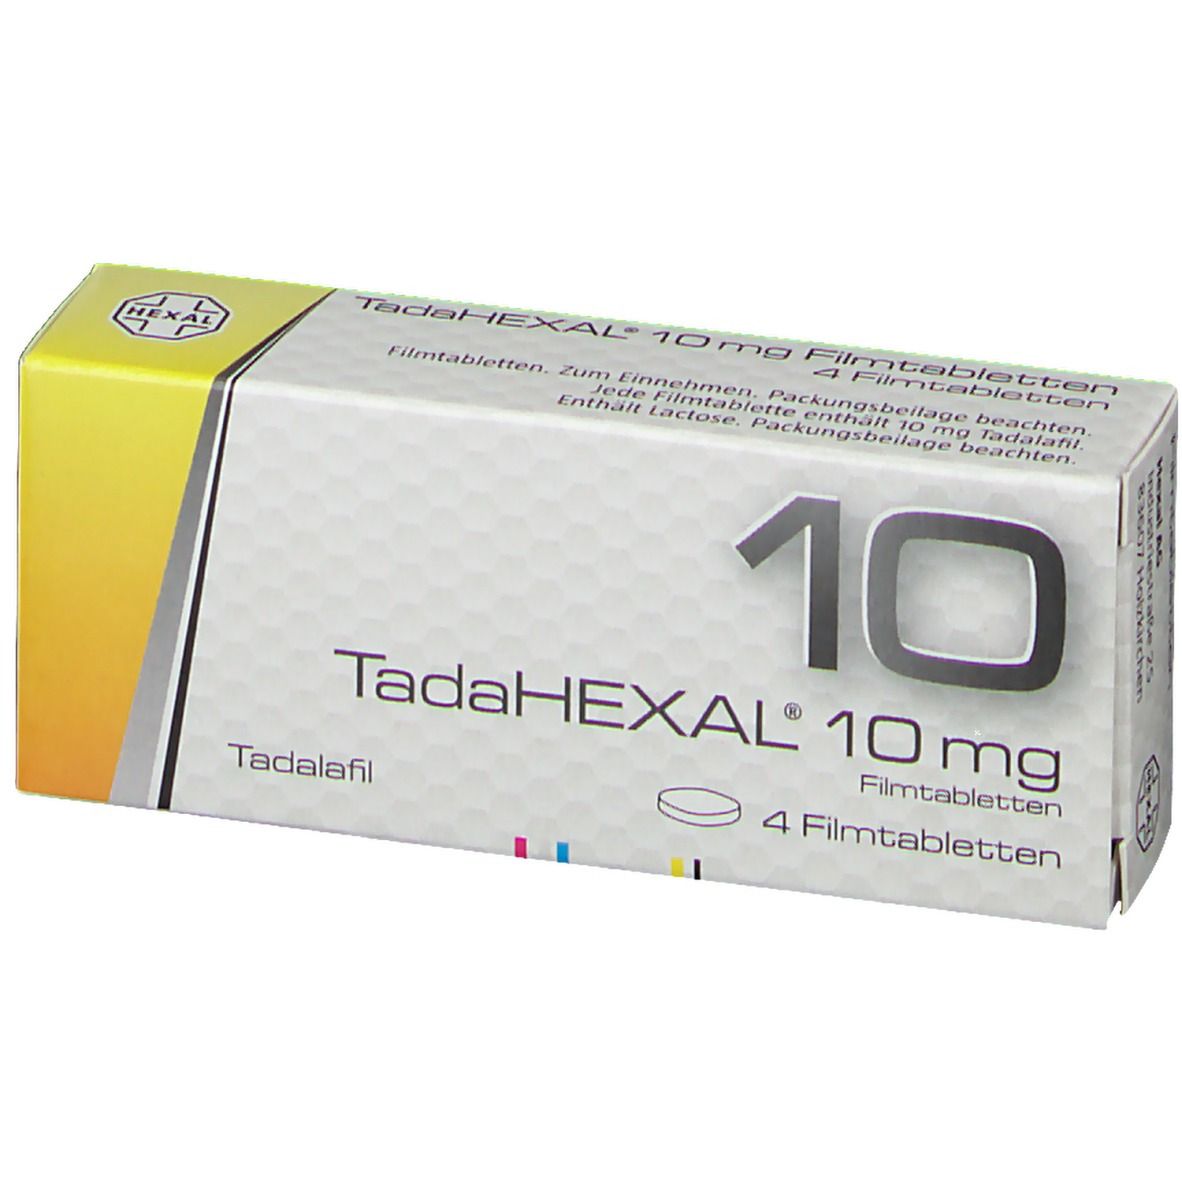 TadaHEXAL® 10 mg